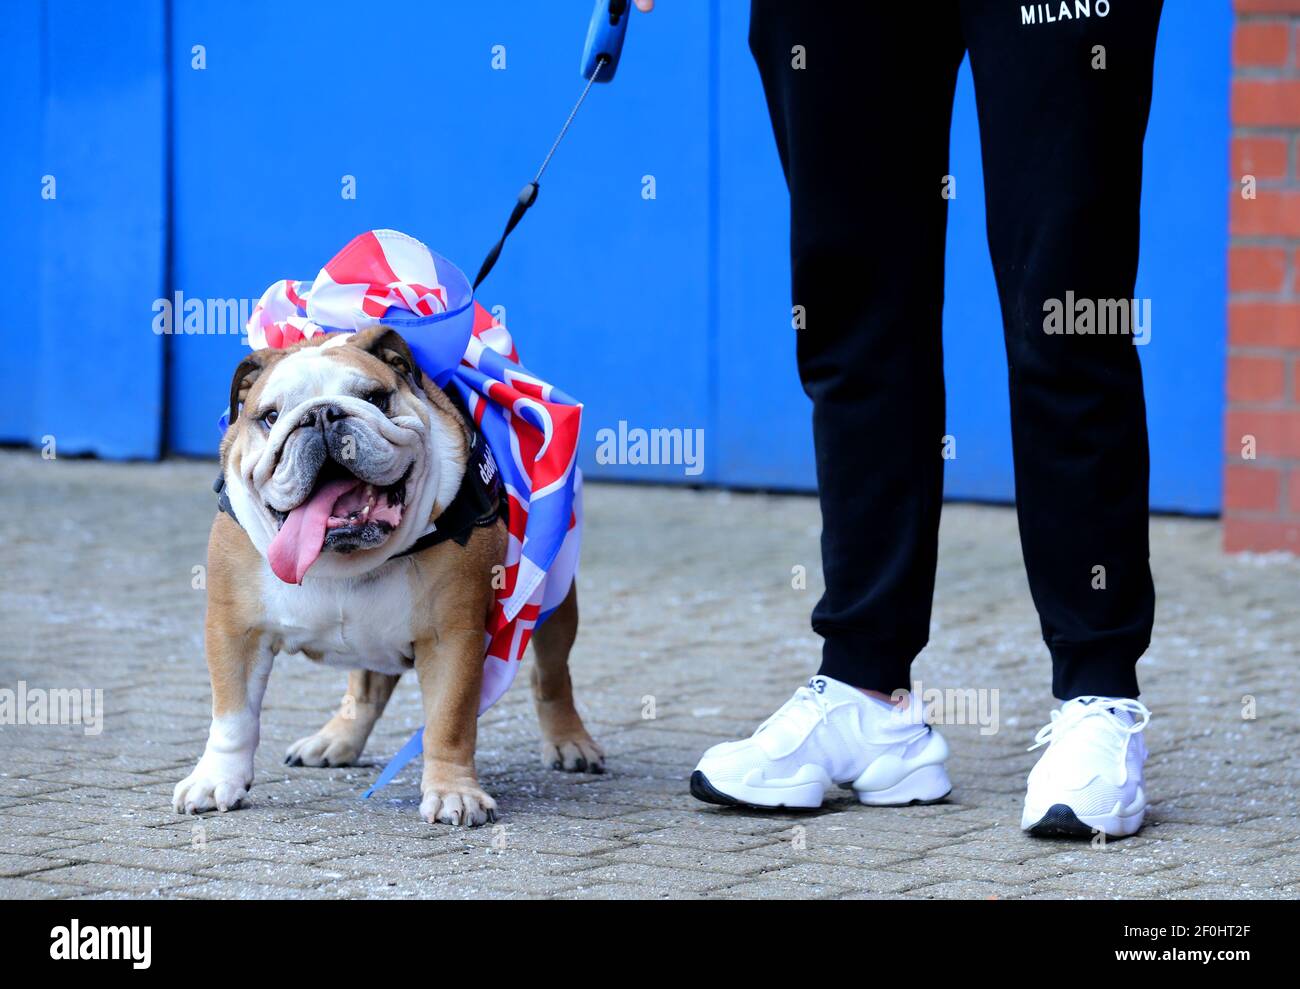 Ein Hund mit einem Banner um sein Geschirr vor dem Ibrox Stadium gebunden,  als Fans versammeln, um Rangers gewinnen den schottischen Premiership Titel  zu feiern. Bilddatum: Sonntag, 7. März 2021 Stockfotografie - Alamy